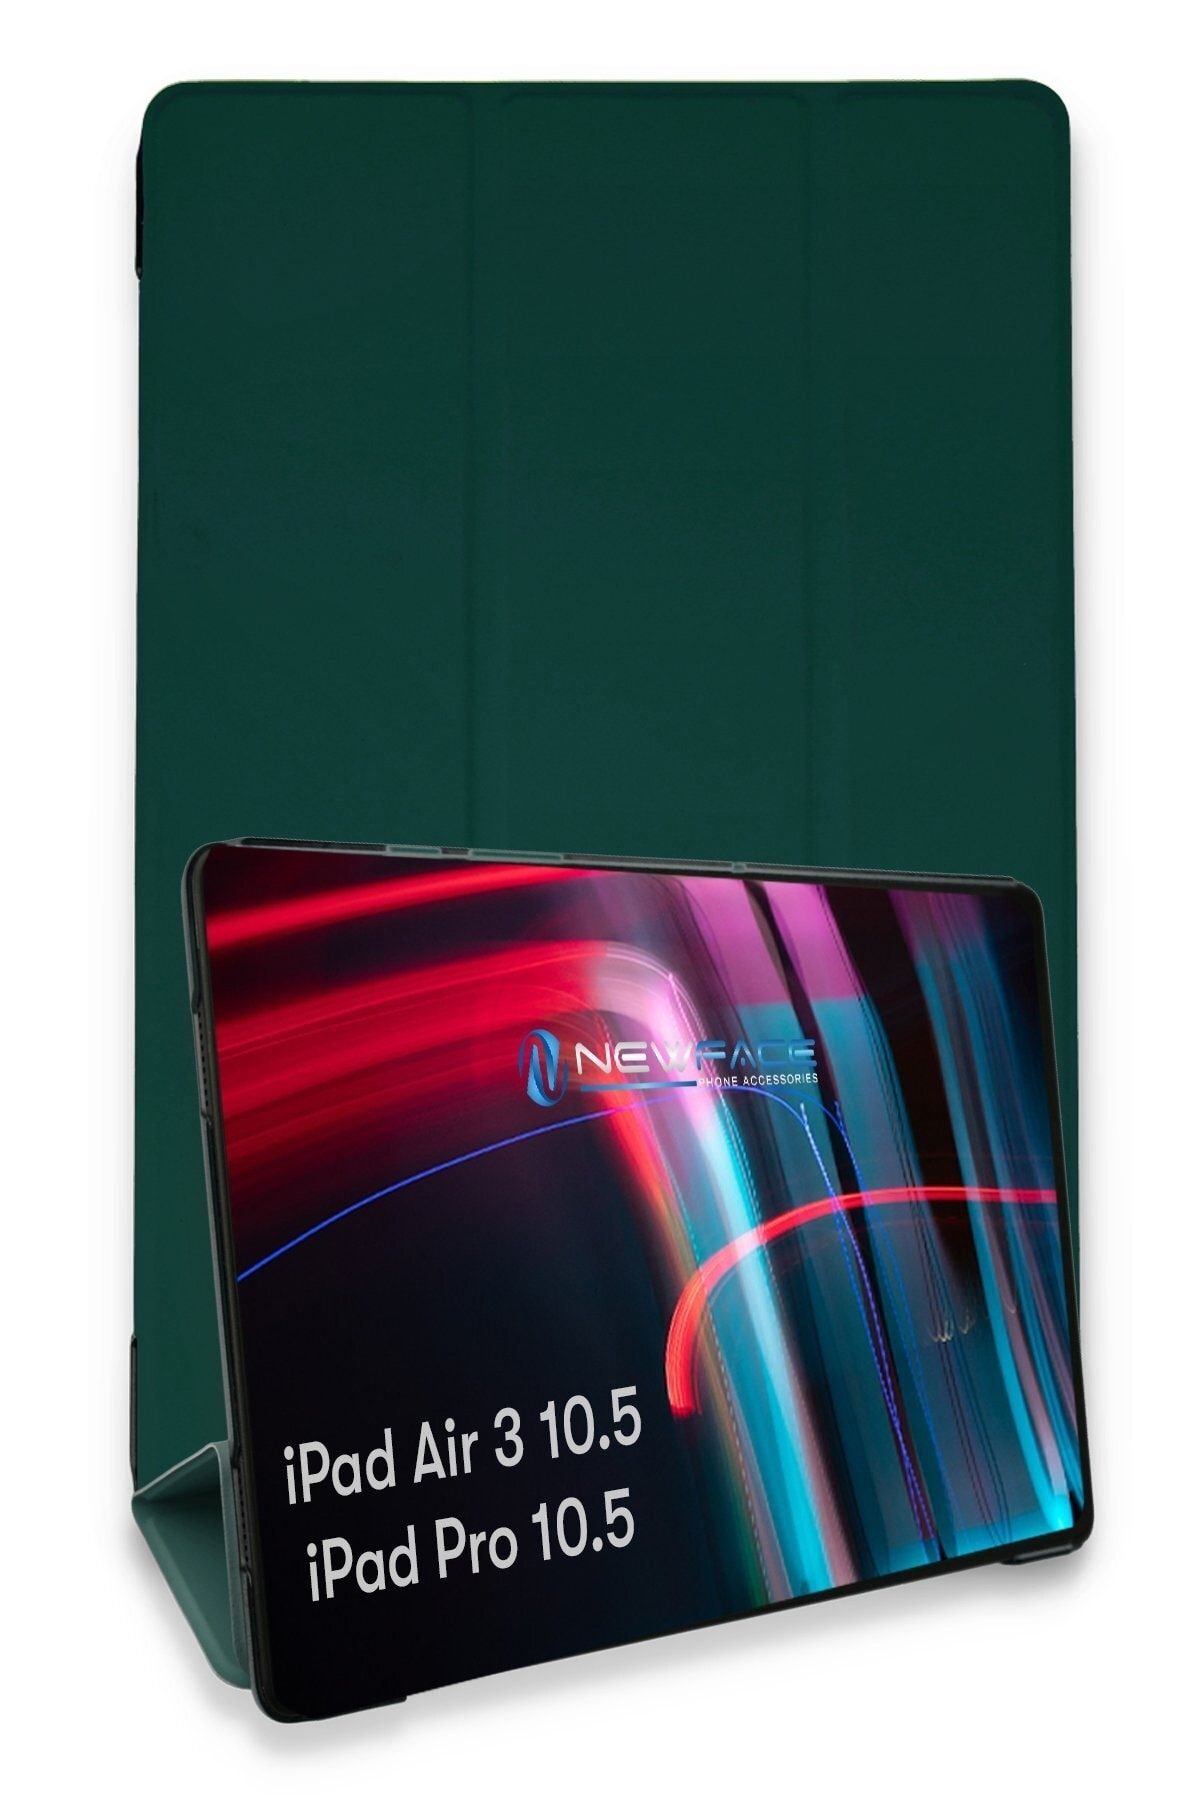 Bilişim Aksesuar Ipad Air 3 10.5 Kılıf Tablet Smart Cover Kılıf - Koyu Yeşil